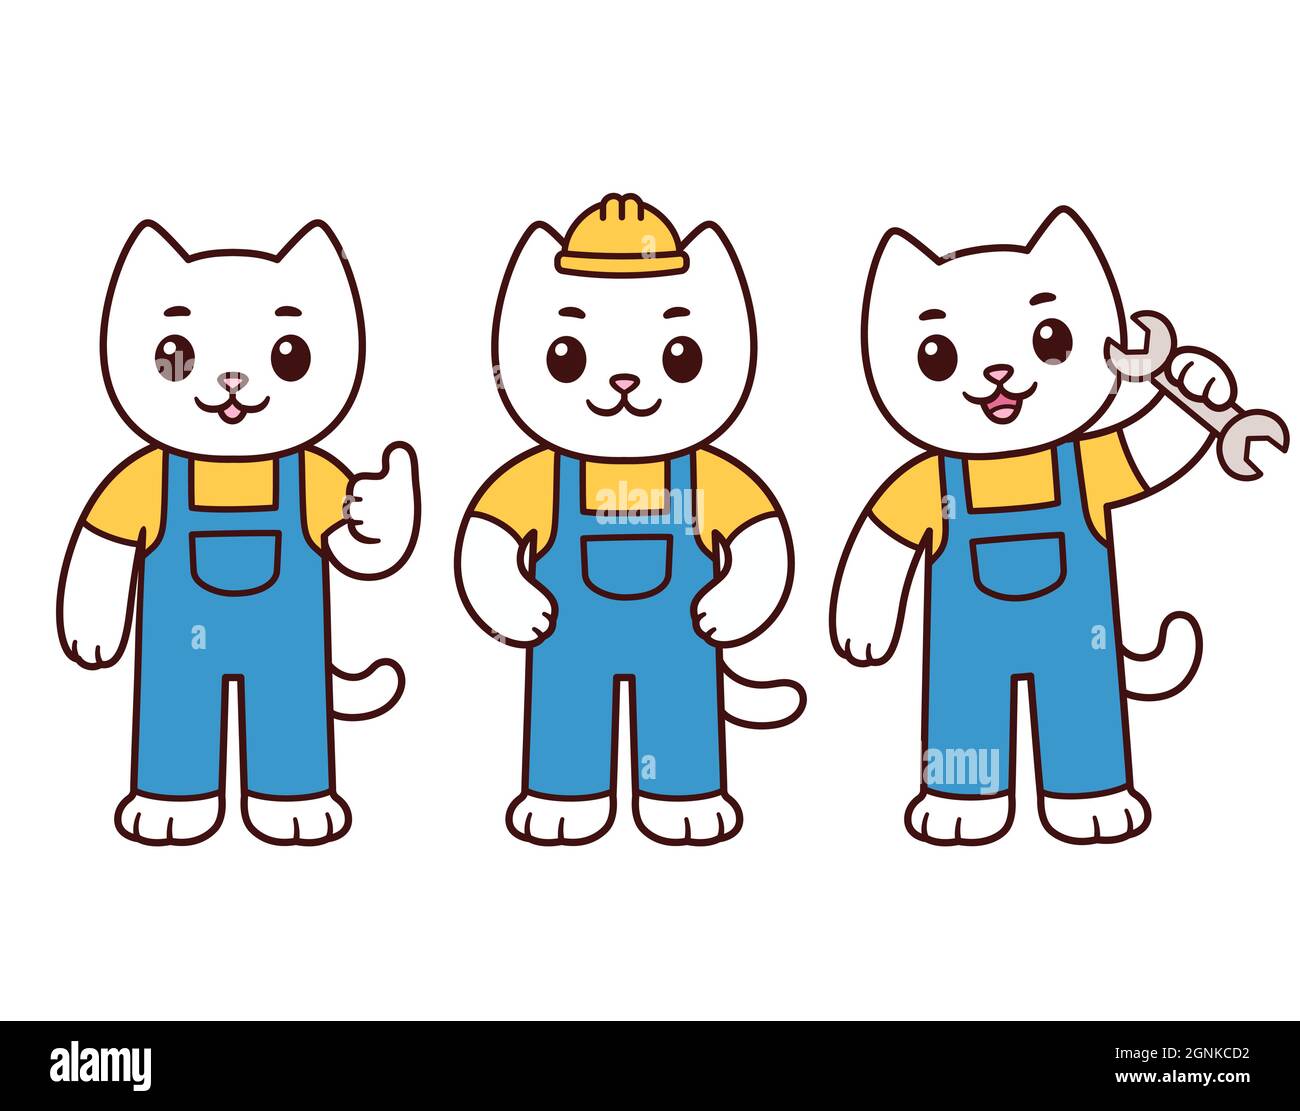 Niedliche Karikatur Bauarbeiter Katze Charakter-Set. Weißes Kitty-Maskottchen in Uniform mit Handyman-Werkzeugen. Vektorgrafik Clip Art Illustration. Stock Vektor